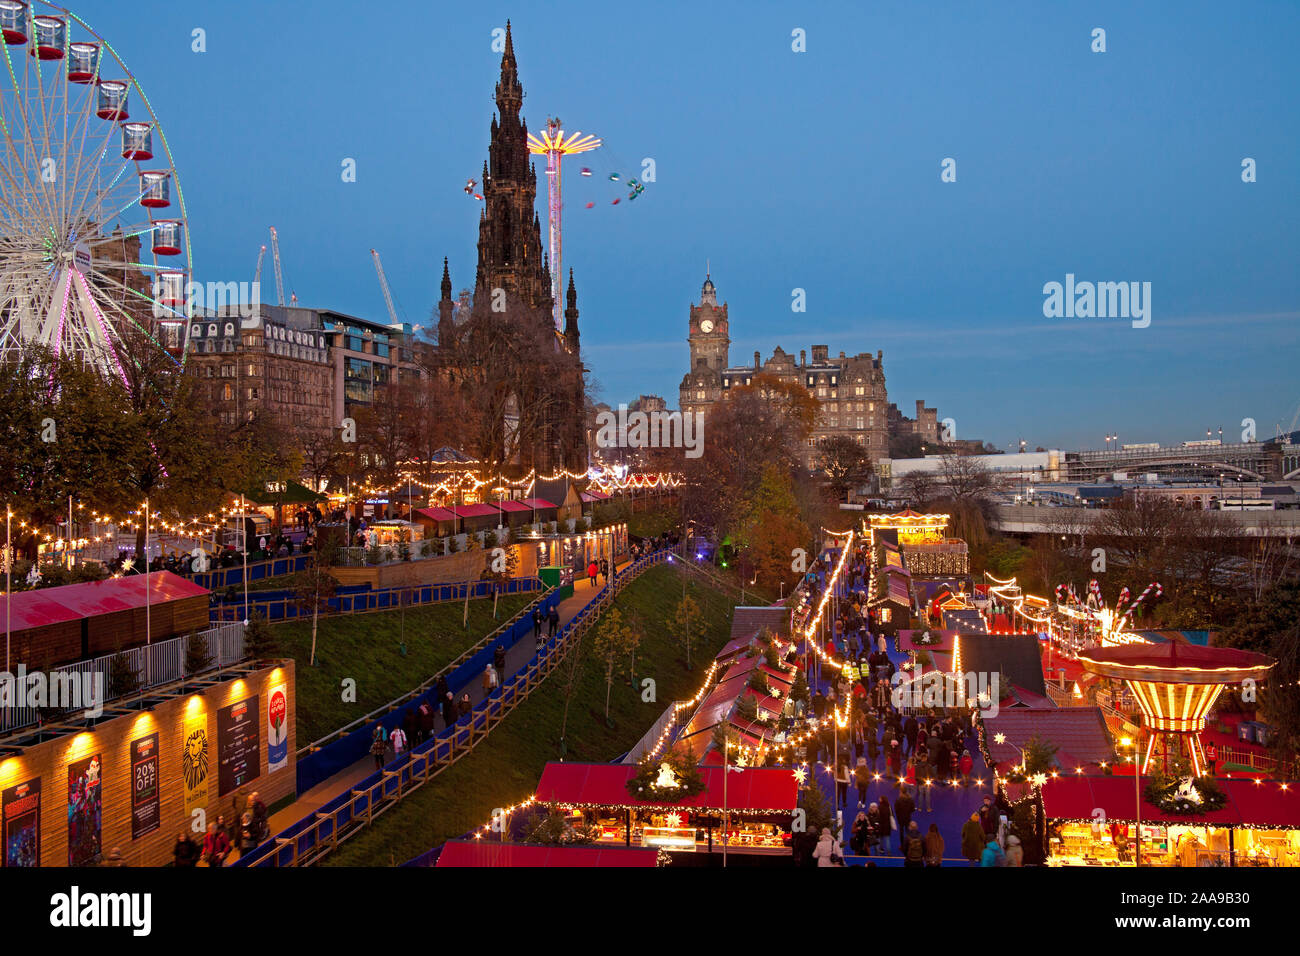 Edimburgo, 2019 Navidad colorido mercado y parque de atracciones de Edimburgo, la calle Princes Street Gardens East, Escocia, Reino Unido, UK Foto de stock